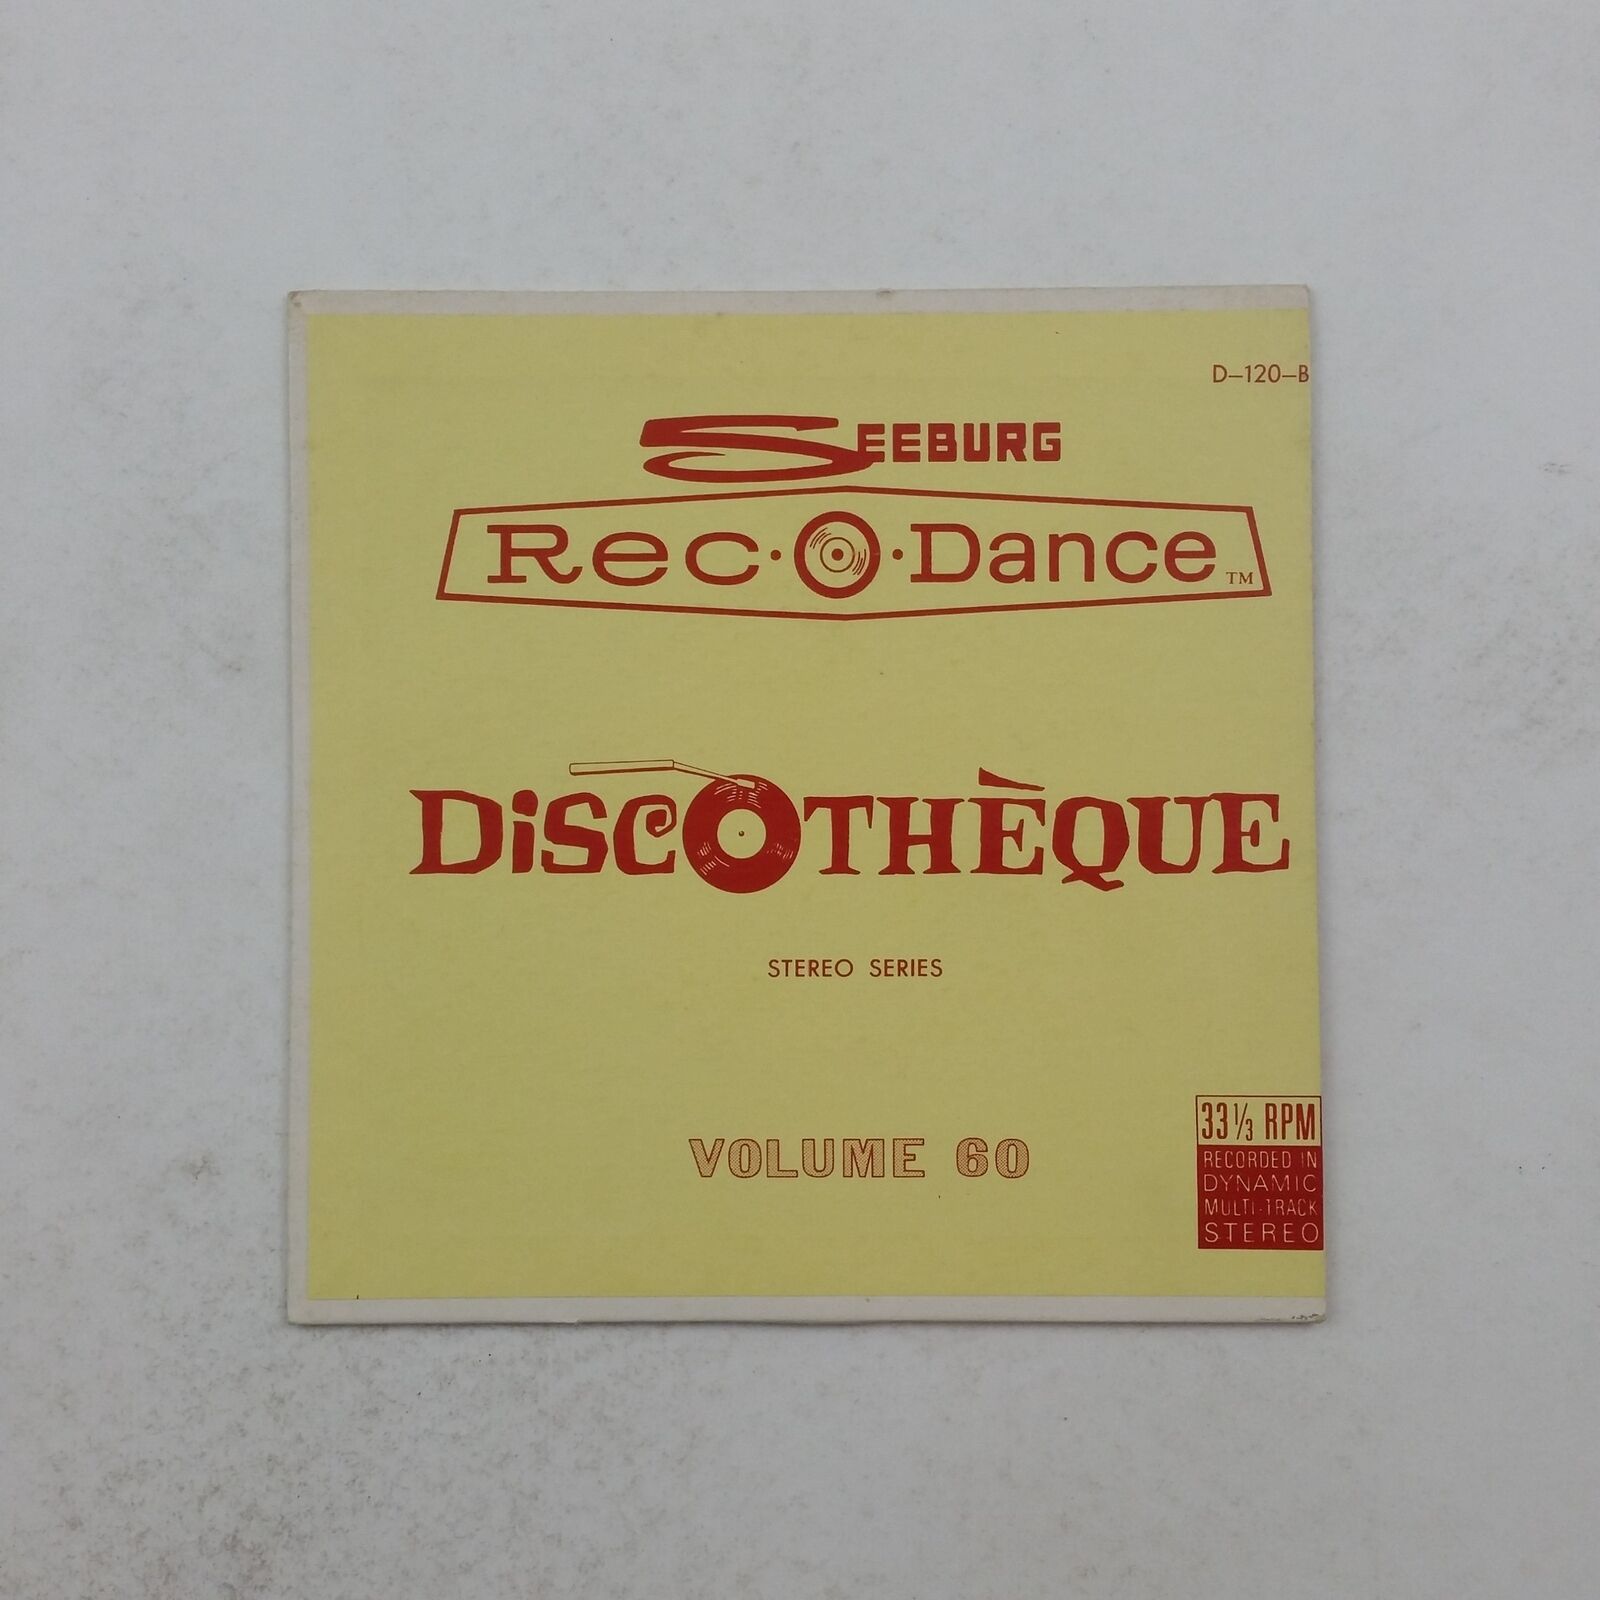 SEEBURG REC O DANCE Vol 60 D120 7\